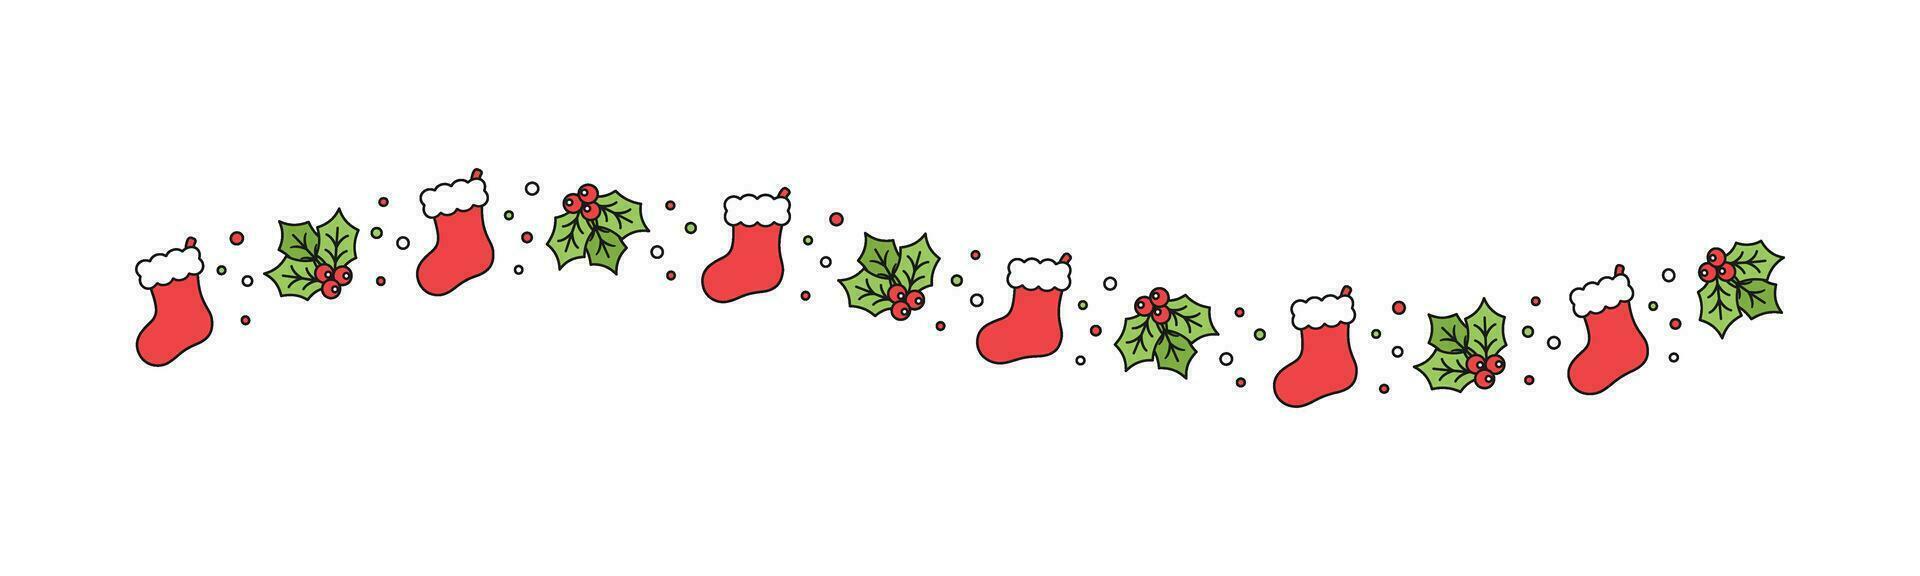 jul tema dekorativ vågig gräns och text delare, jul strumpa och mistel mönster. vektor illustration.